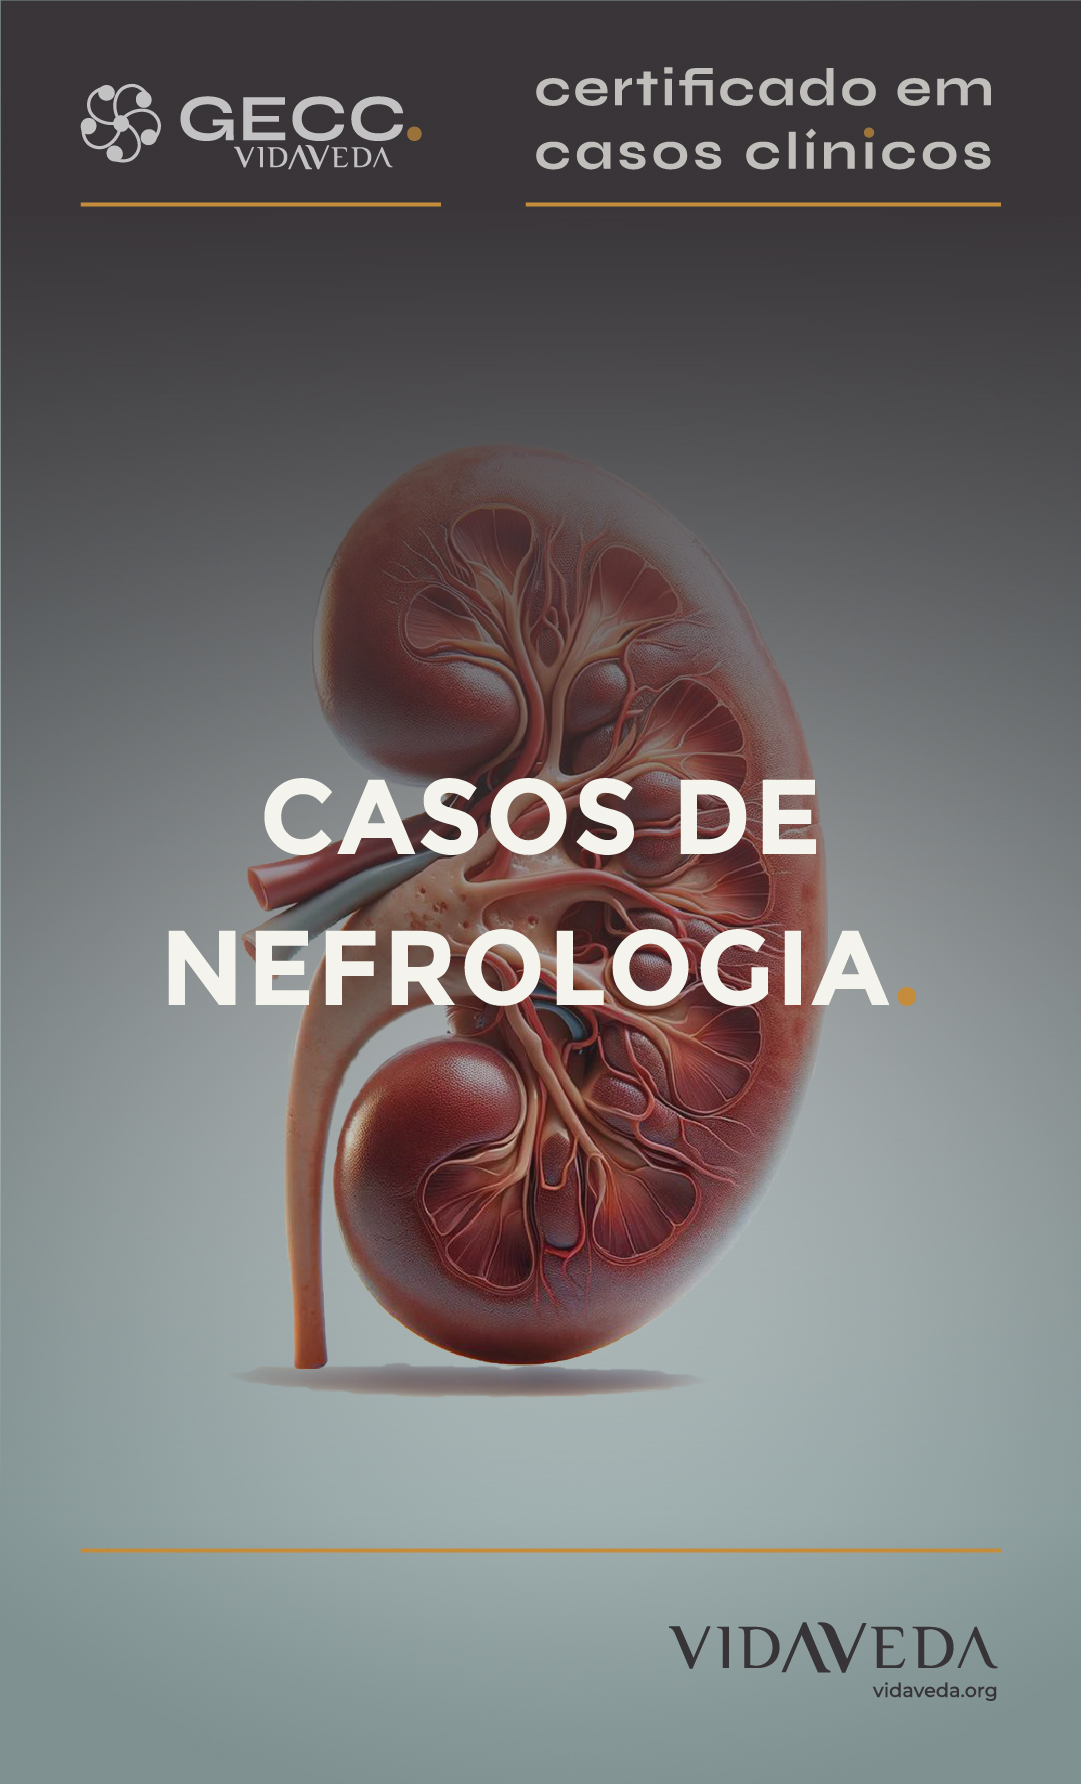 GECC - CASOS DE NEFROLOGIA